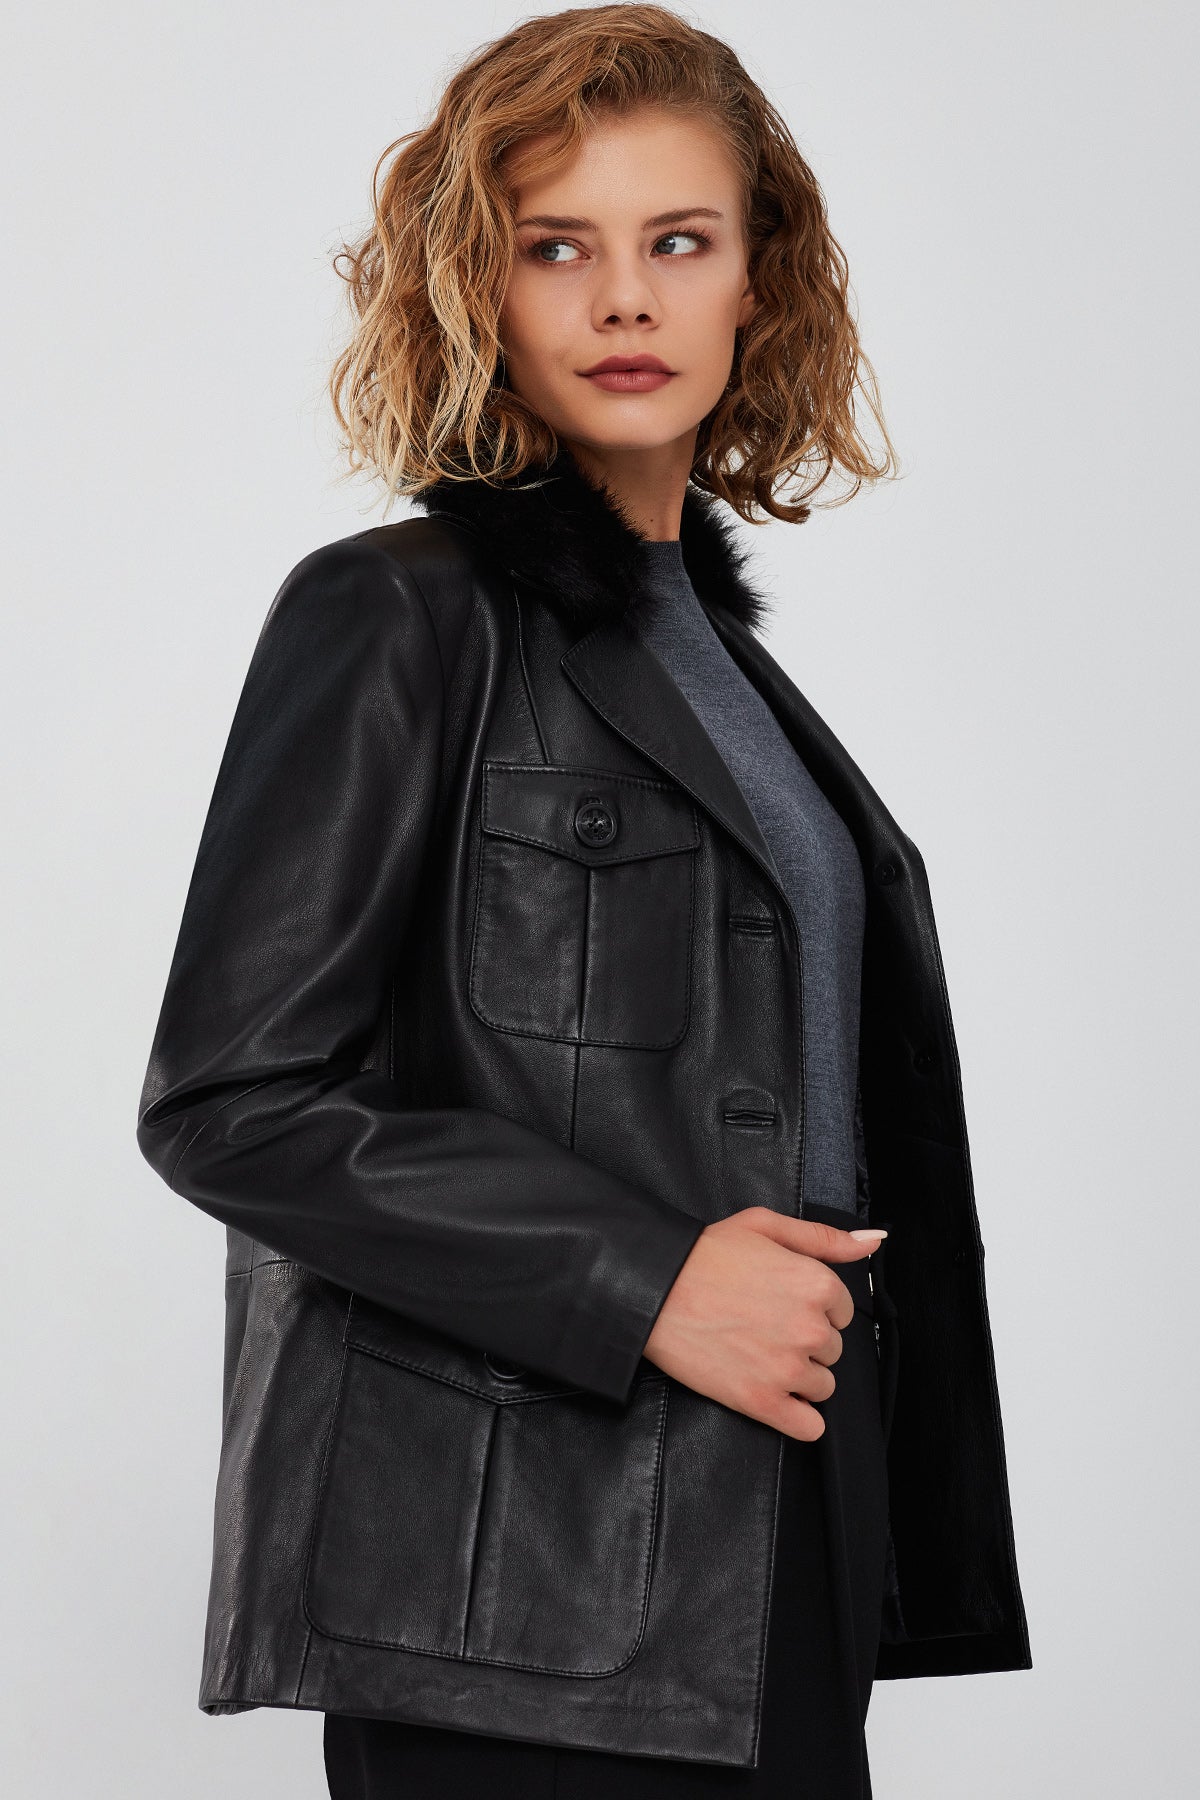 Anais Kadın Siyah Yakası Kürklü Blazer Deri Ceket